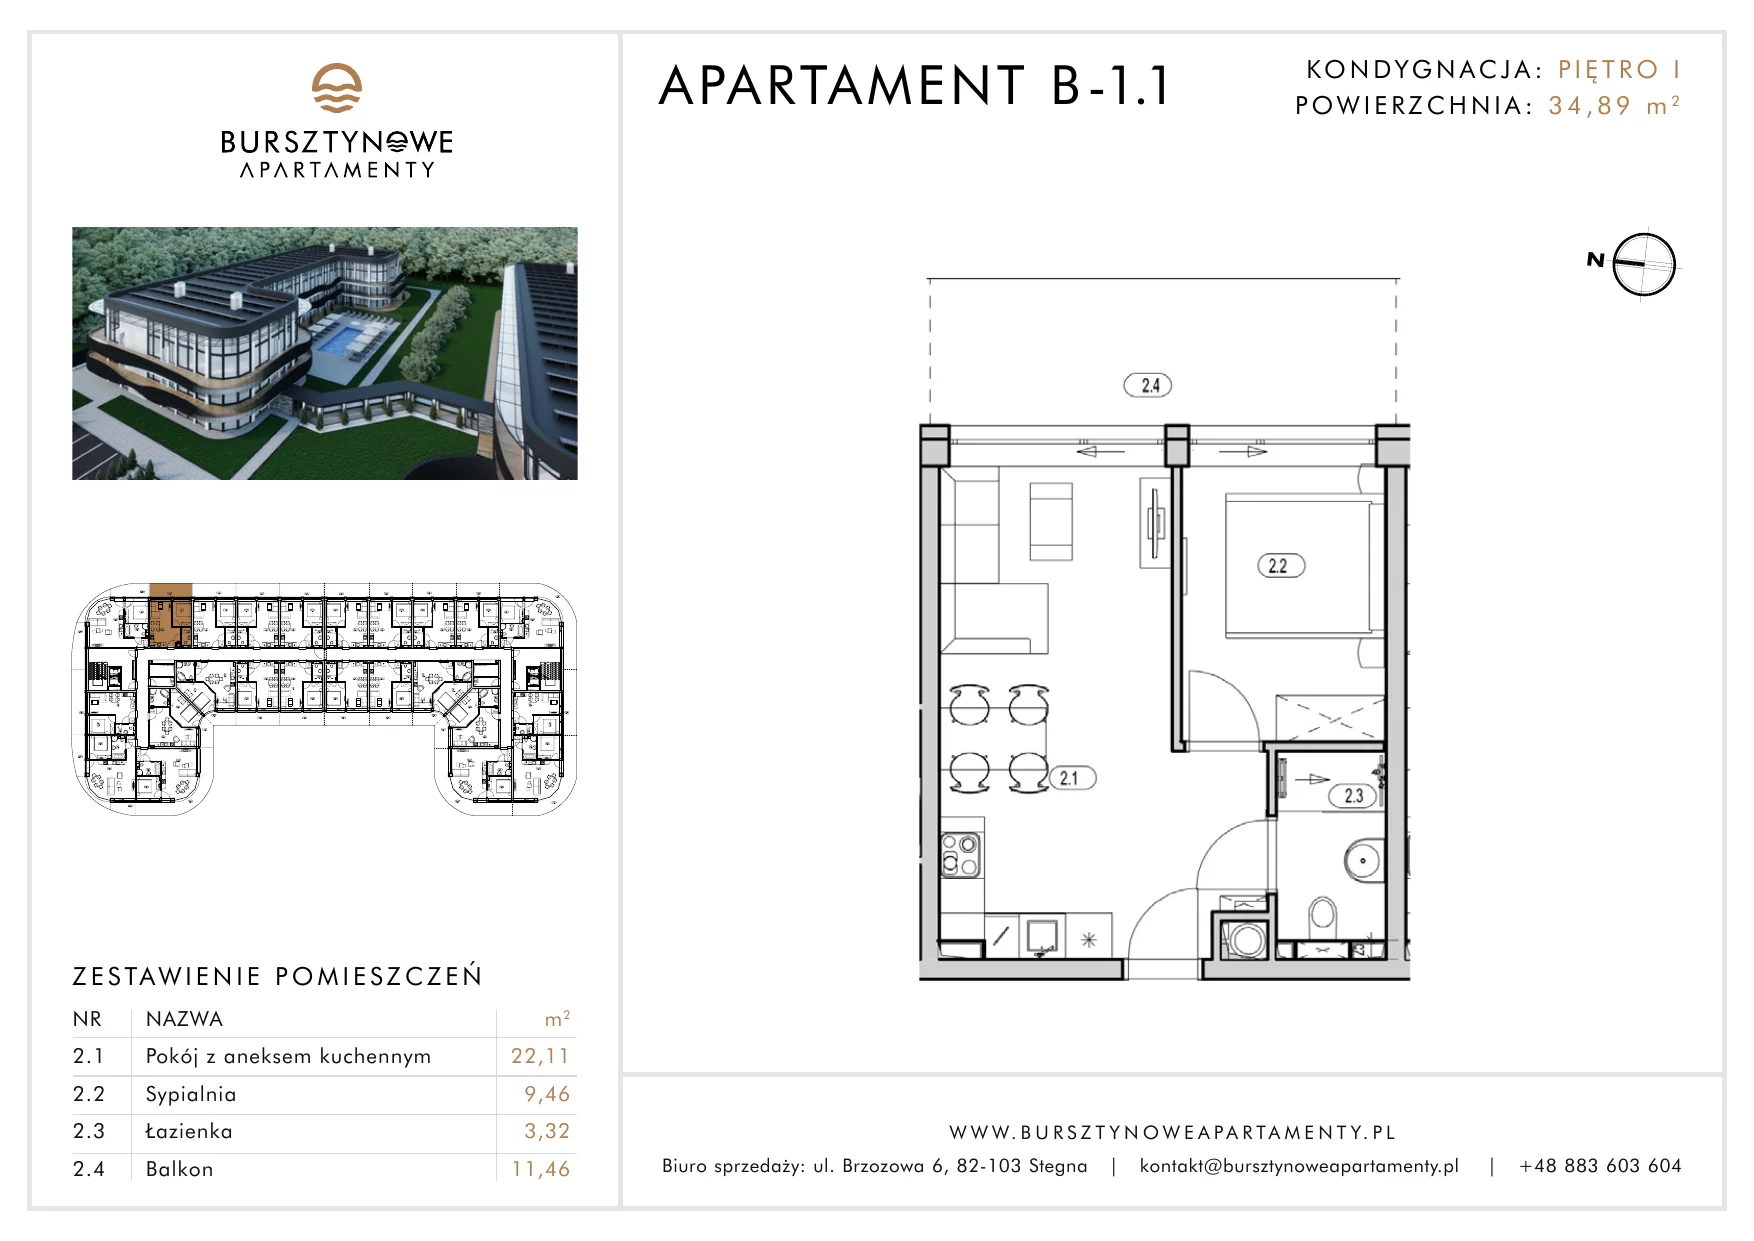 Apartament inwestycyjny 34,89 m², piętro 1, oferta nr B-1.1, Bursztynowe Apartamenty, Stegna, ul. Brzozowa 6